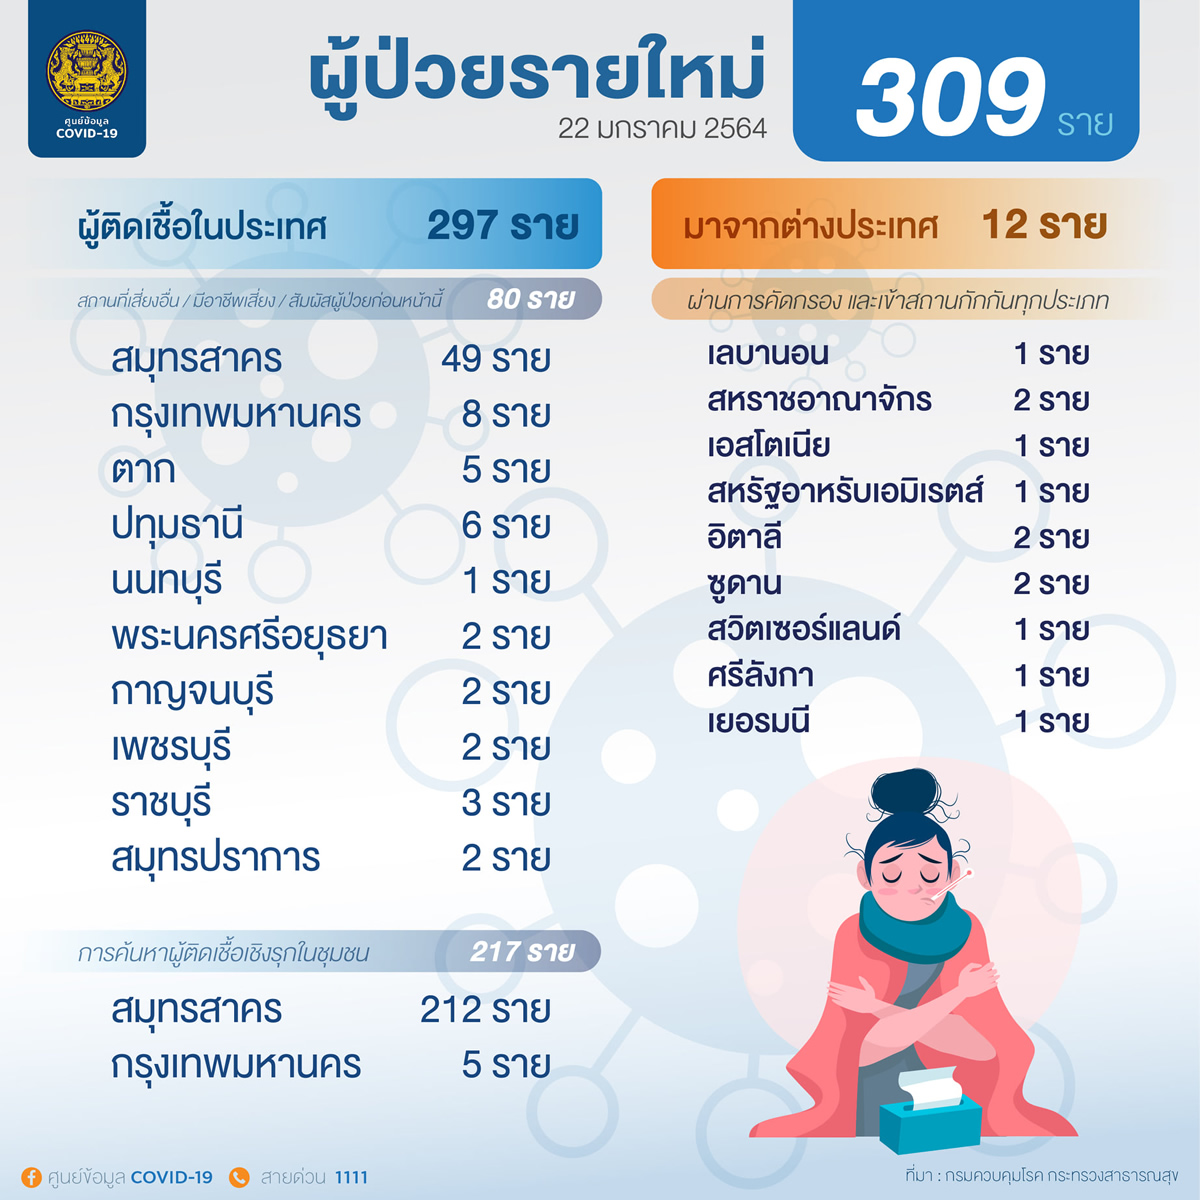 タイ国内感染は新規297人、サムットサコン県は261人［2021年1月22日発表］